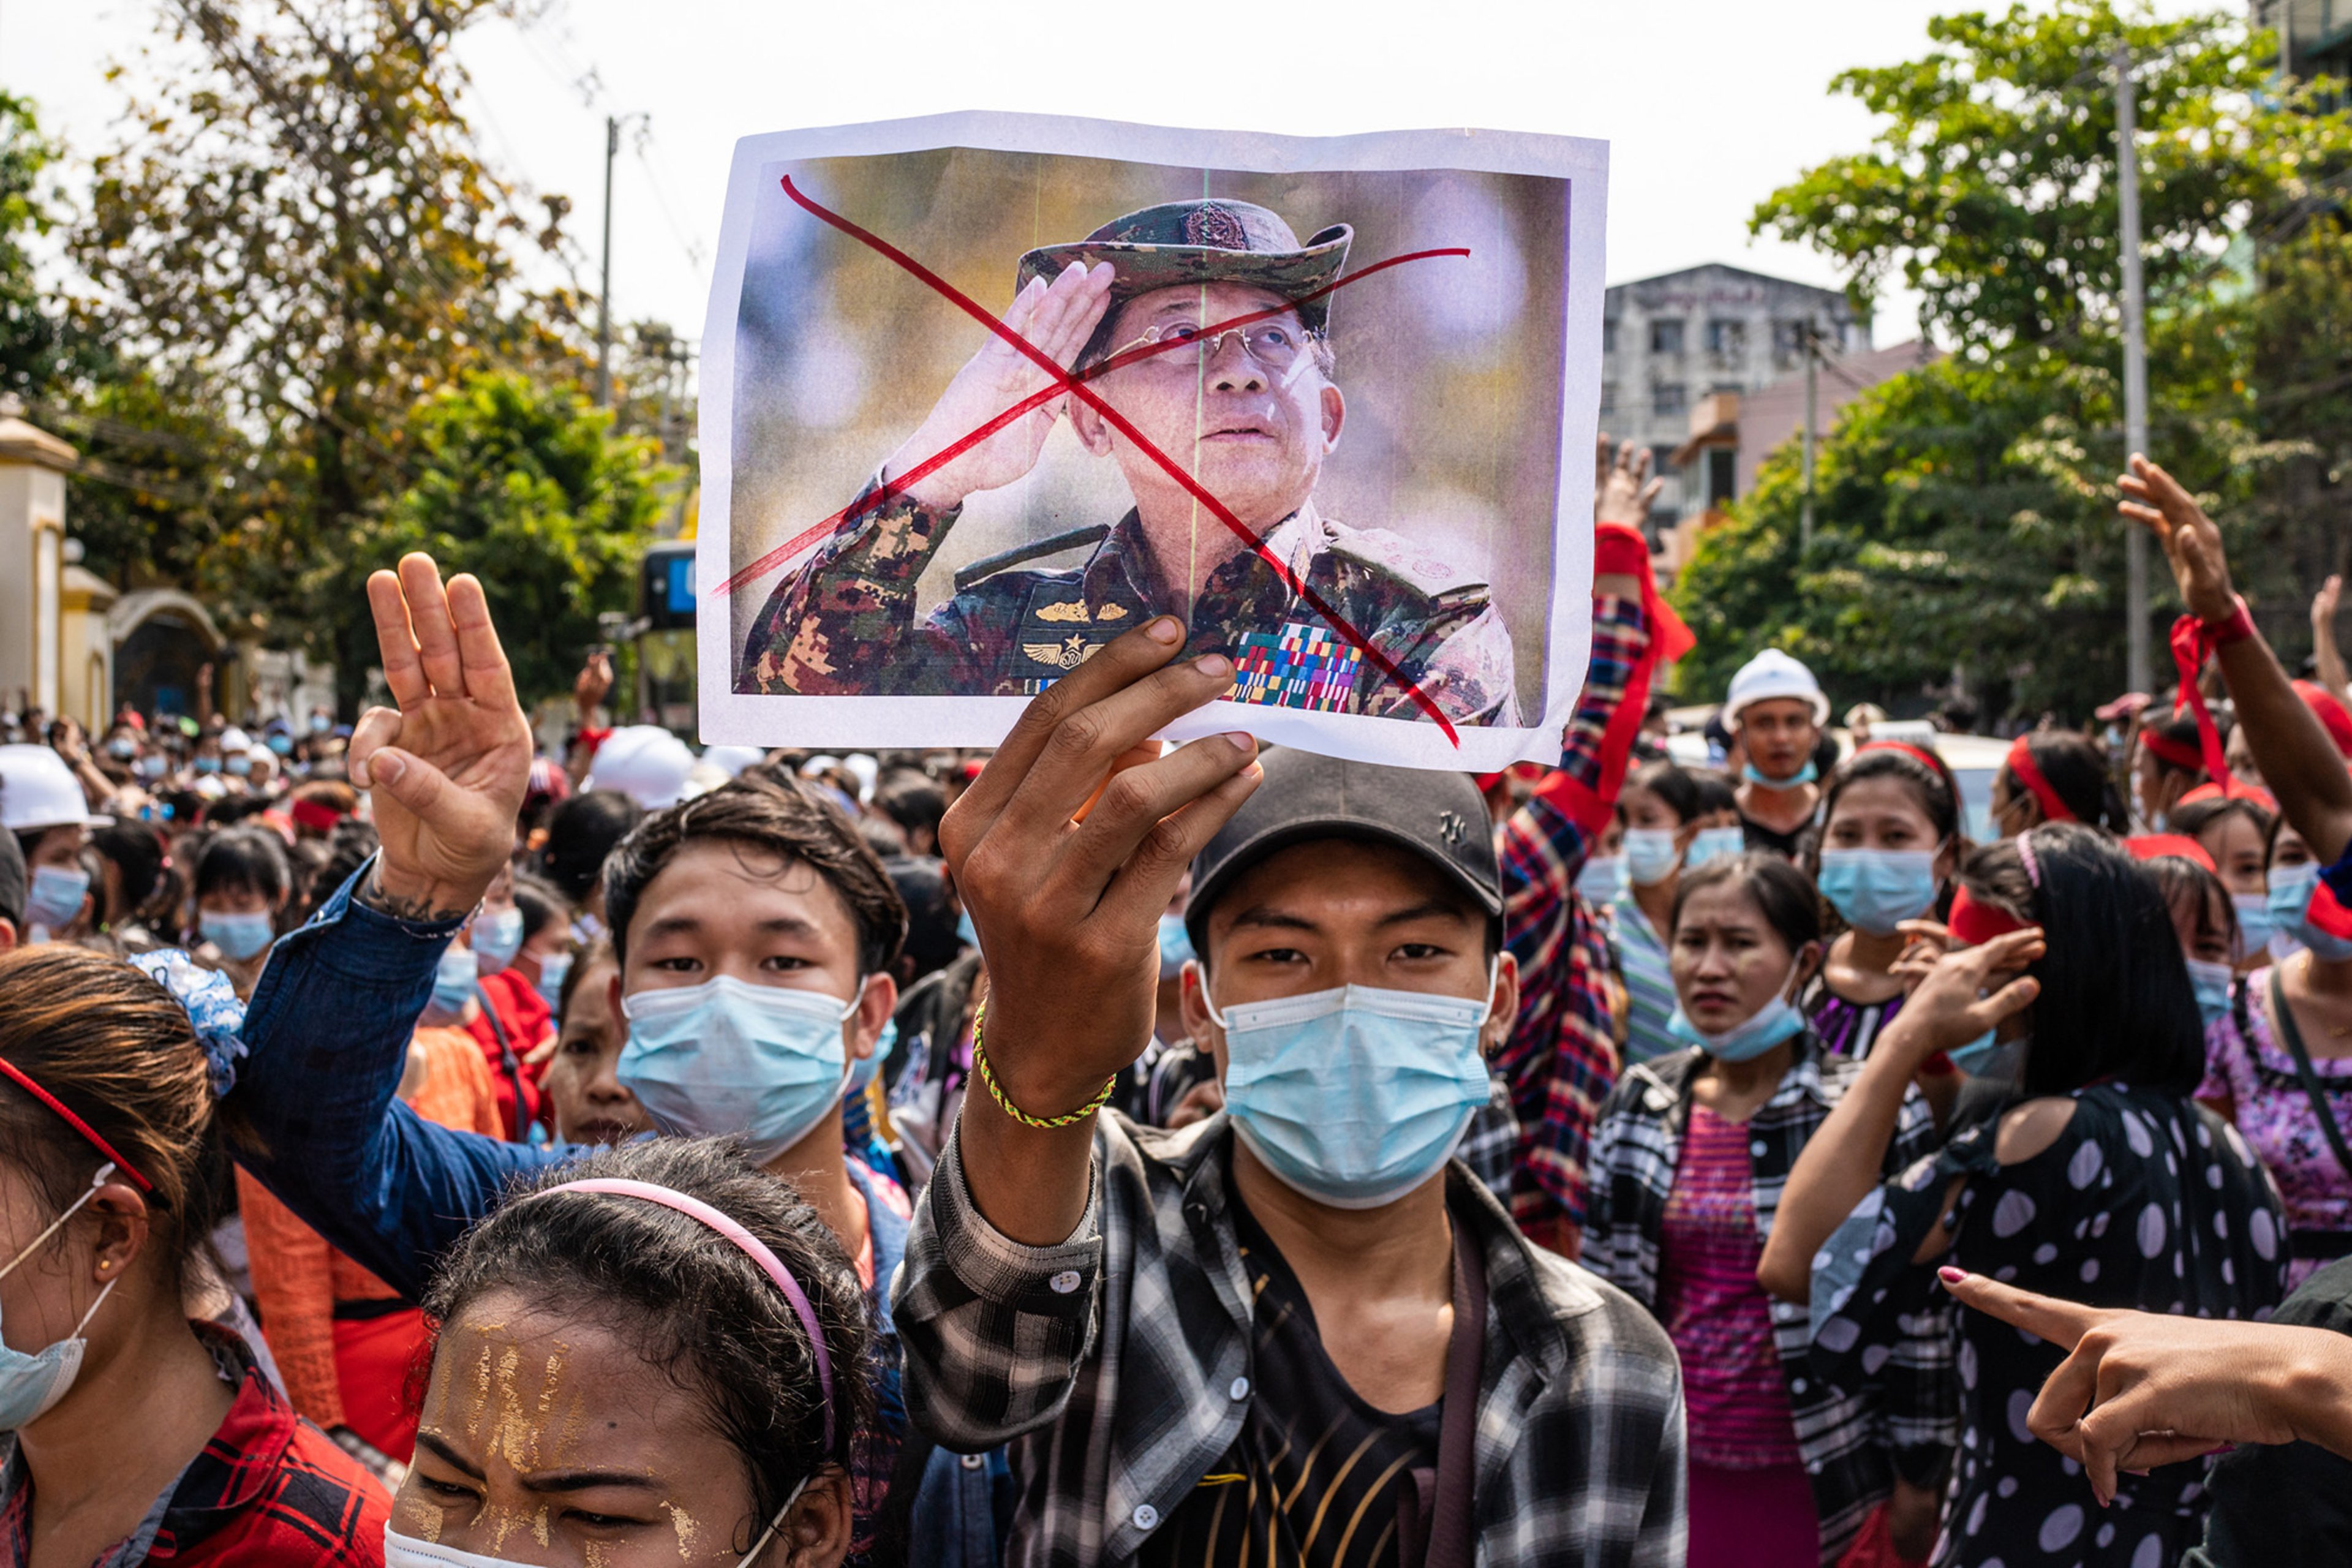 Myanmar conflict brings new Cold War to ASEAN's door